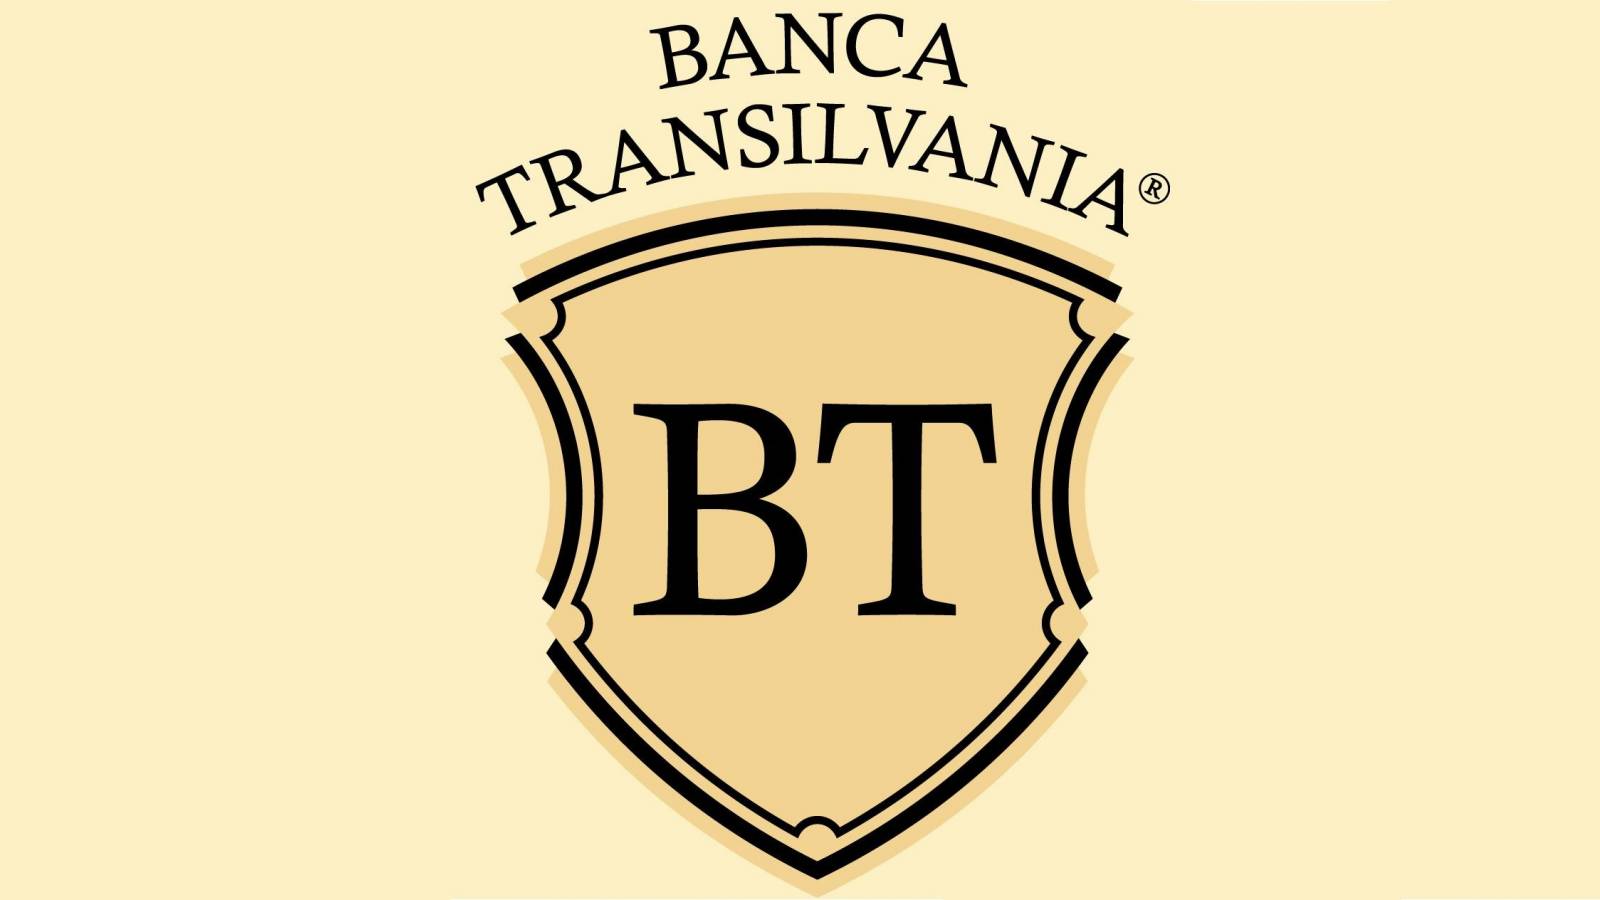 BANCA Transilvania MÅSTE känna till det officiella meddelandet som skickas till kunder